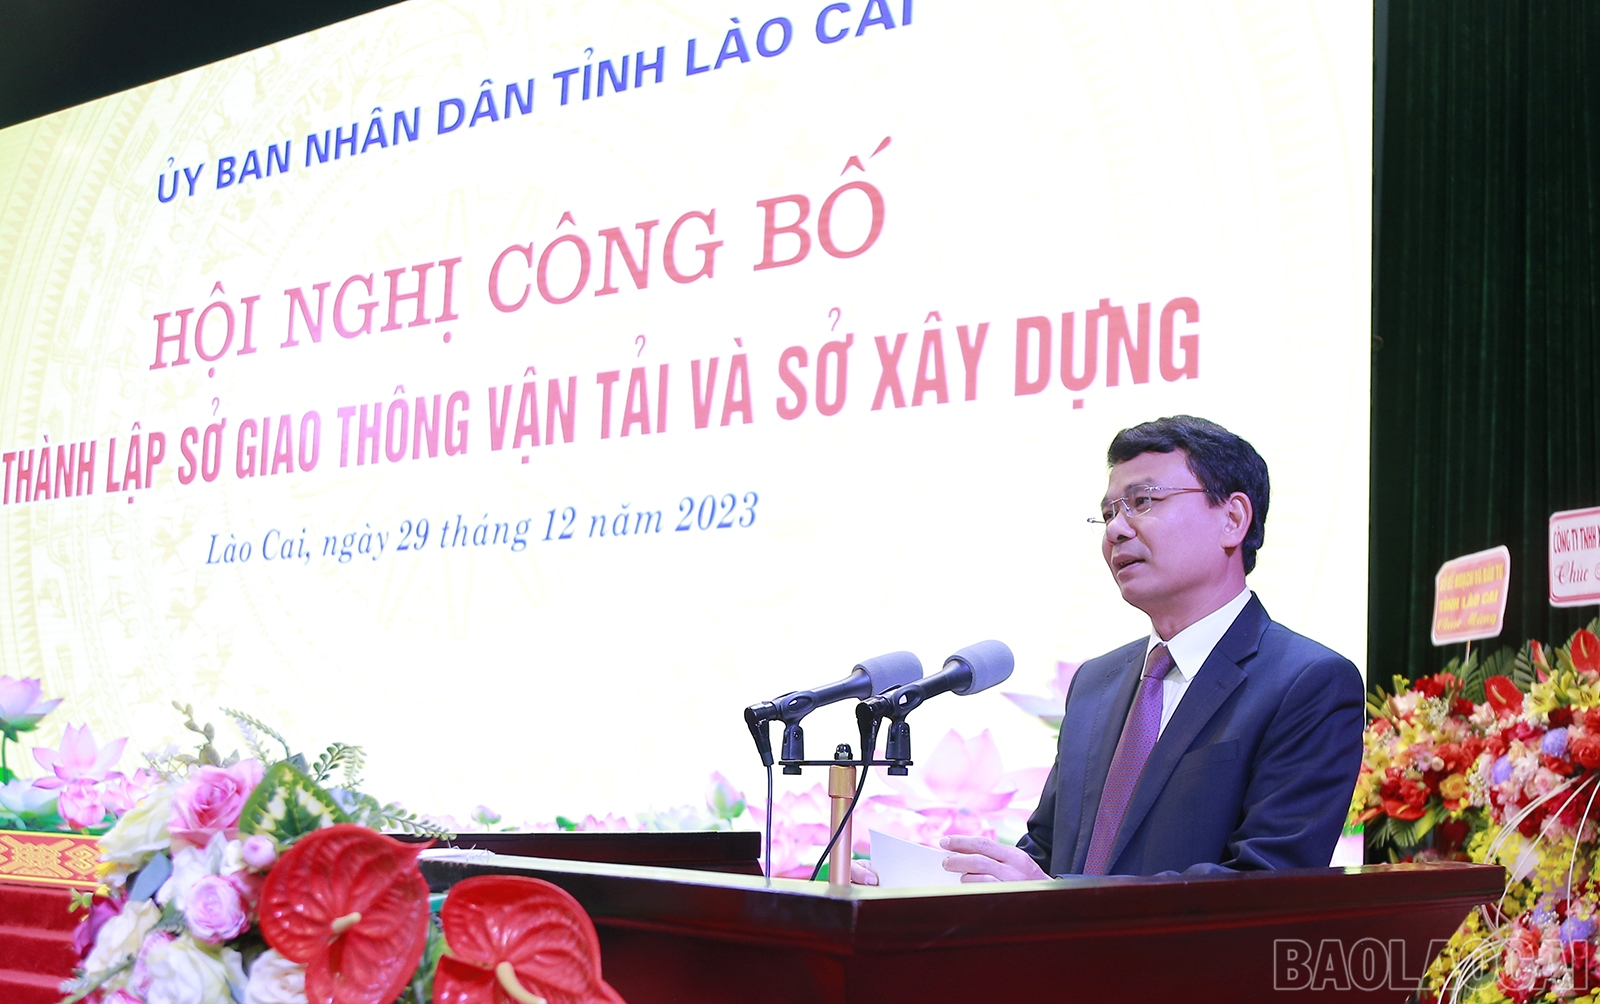 Lào Cai thành lập Sở Giao thông vận tải và Sở Xây dựng, bổ nhiệm lãnh đạo 2 Sở- Ảnh 3.